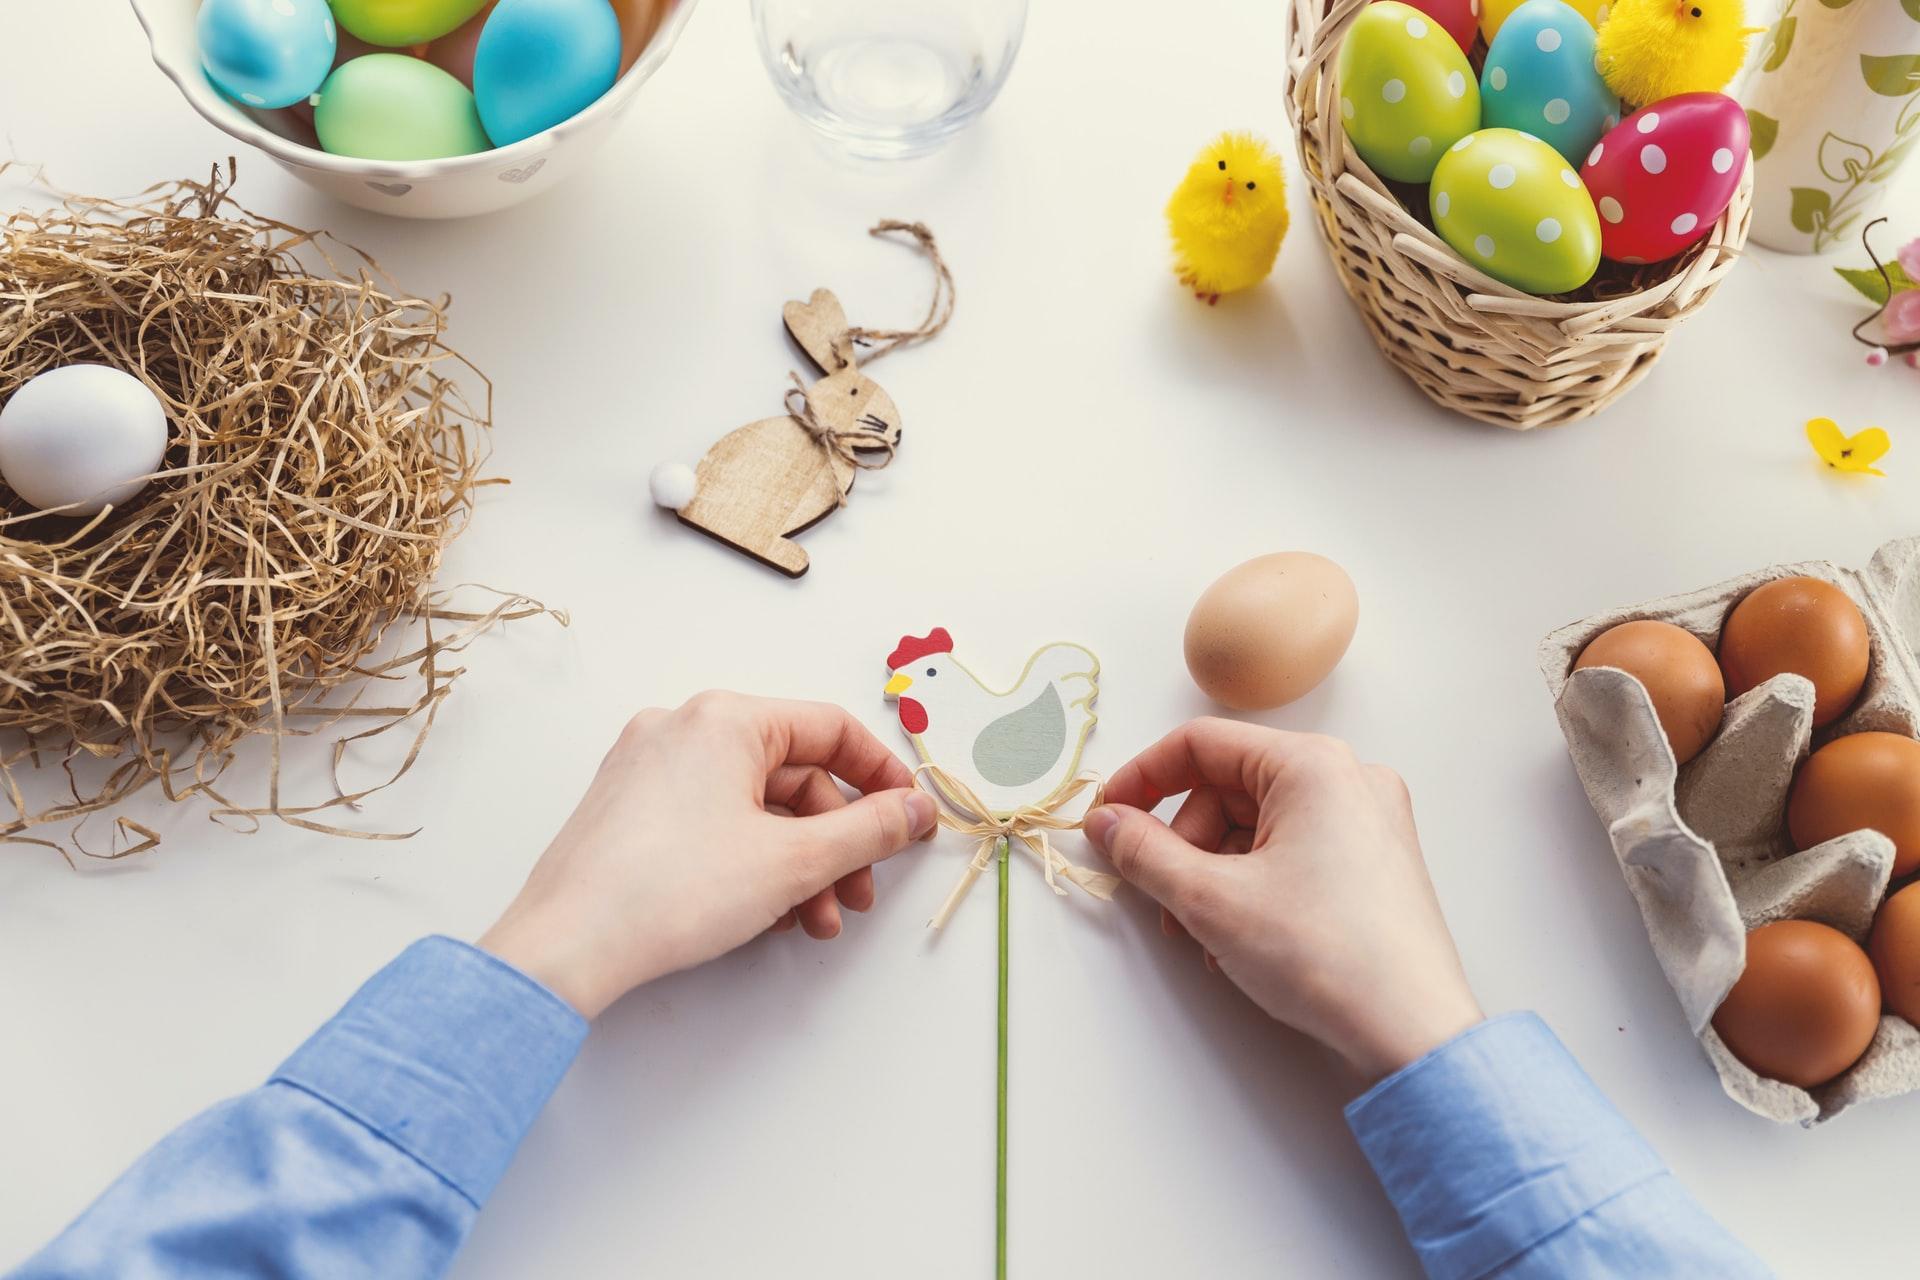 12 Pack Easter Egg Ornaments Paint Craft For Kids- Easter Basket